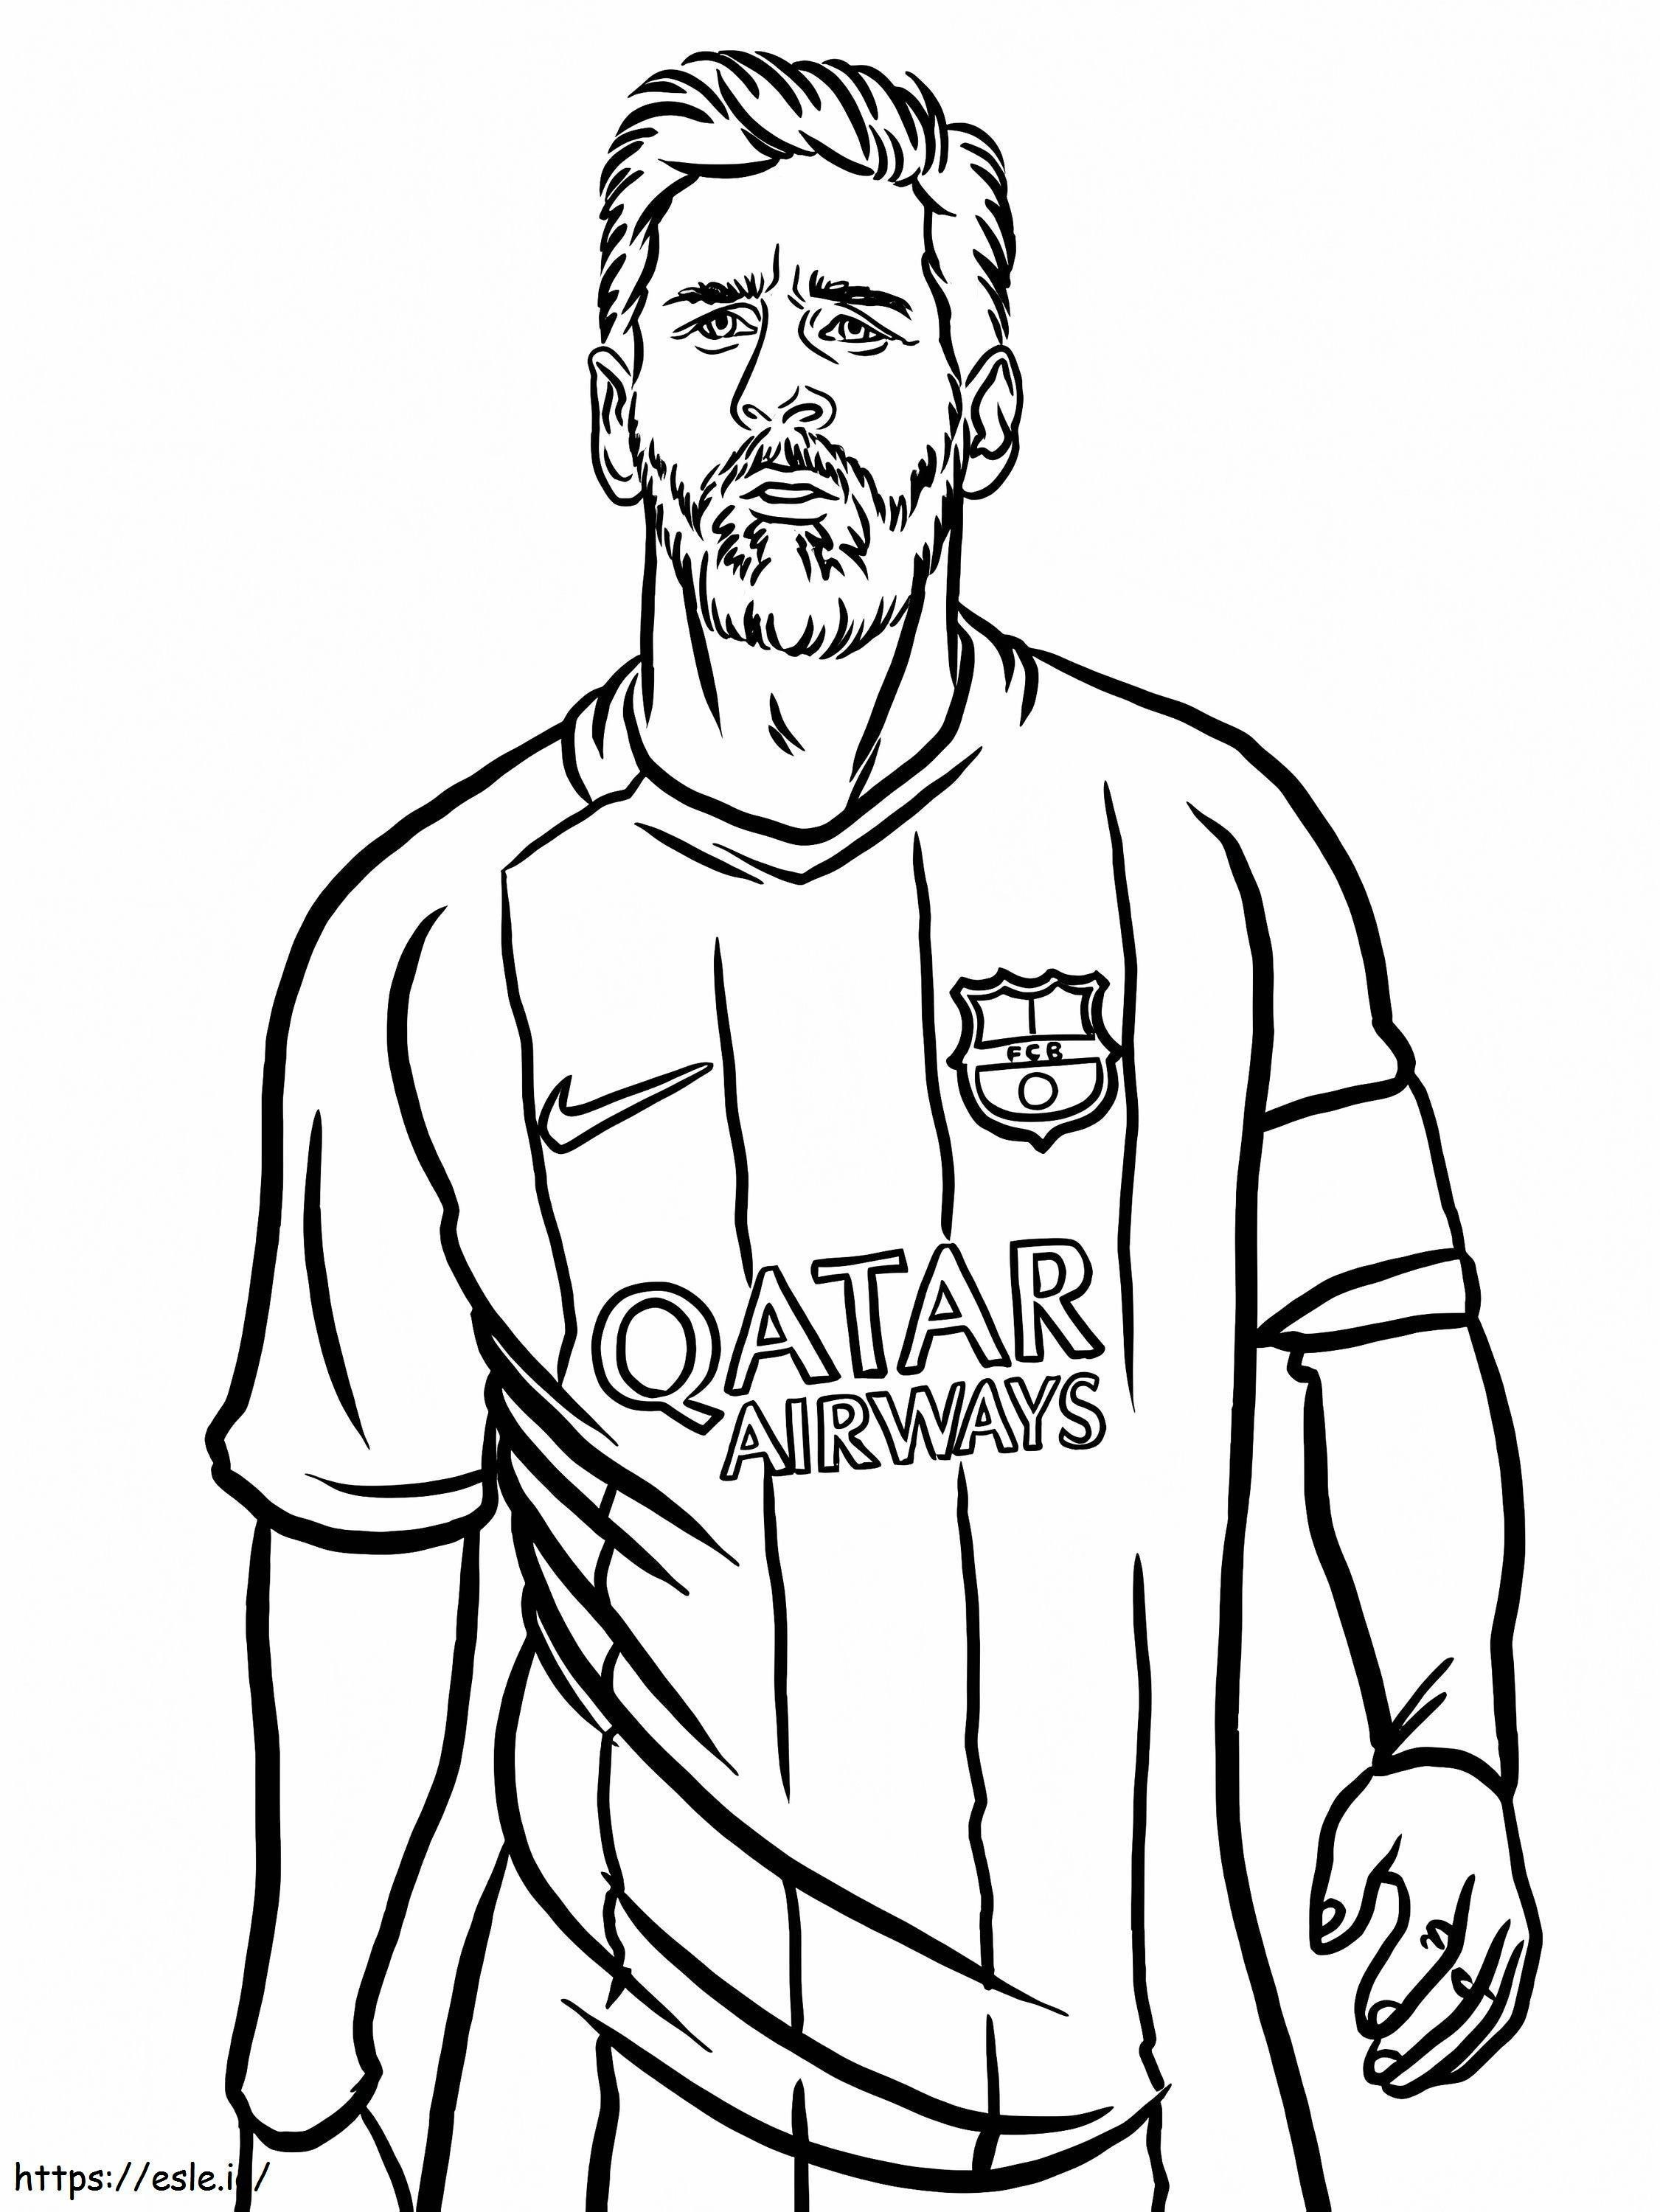 Portretul lui Lionel Messi de colorat